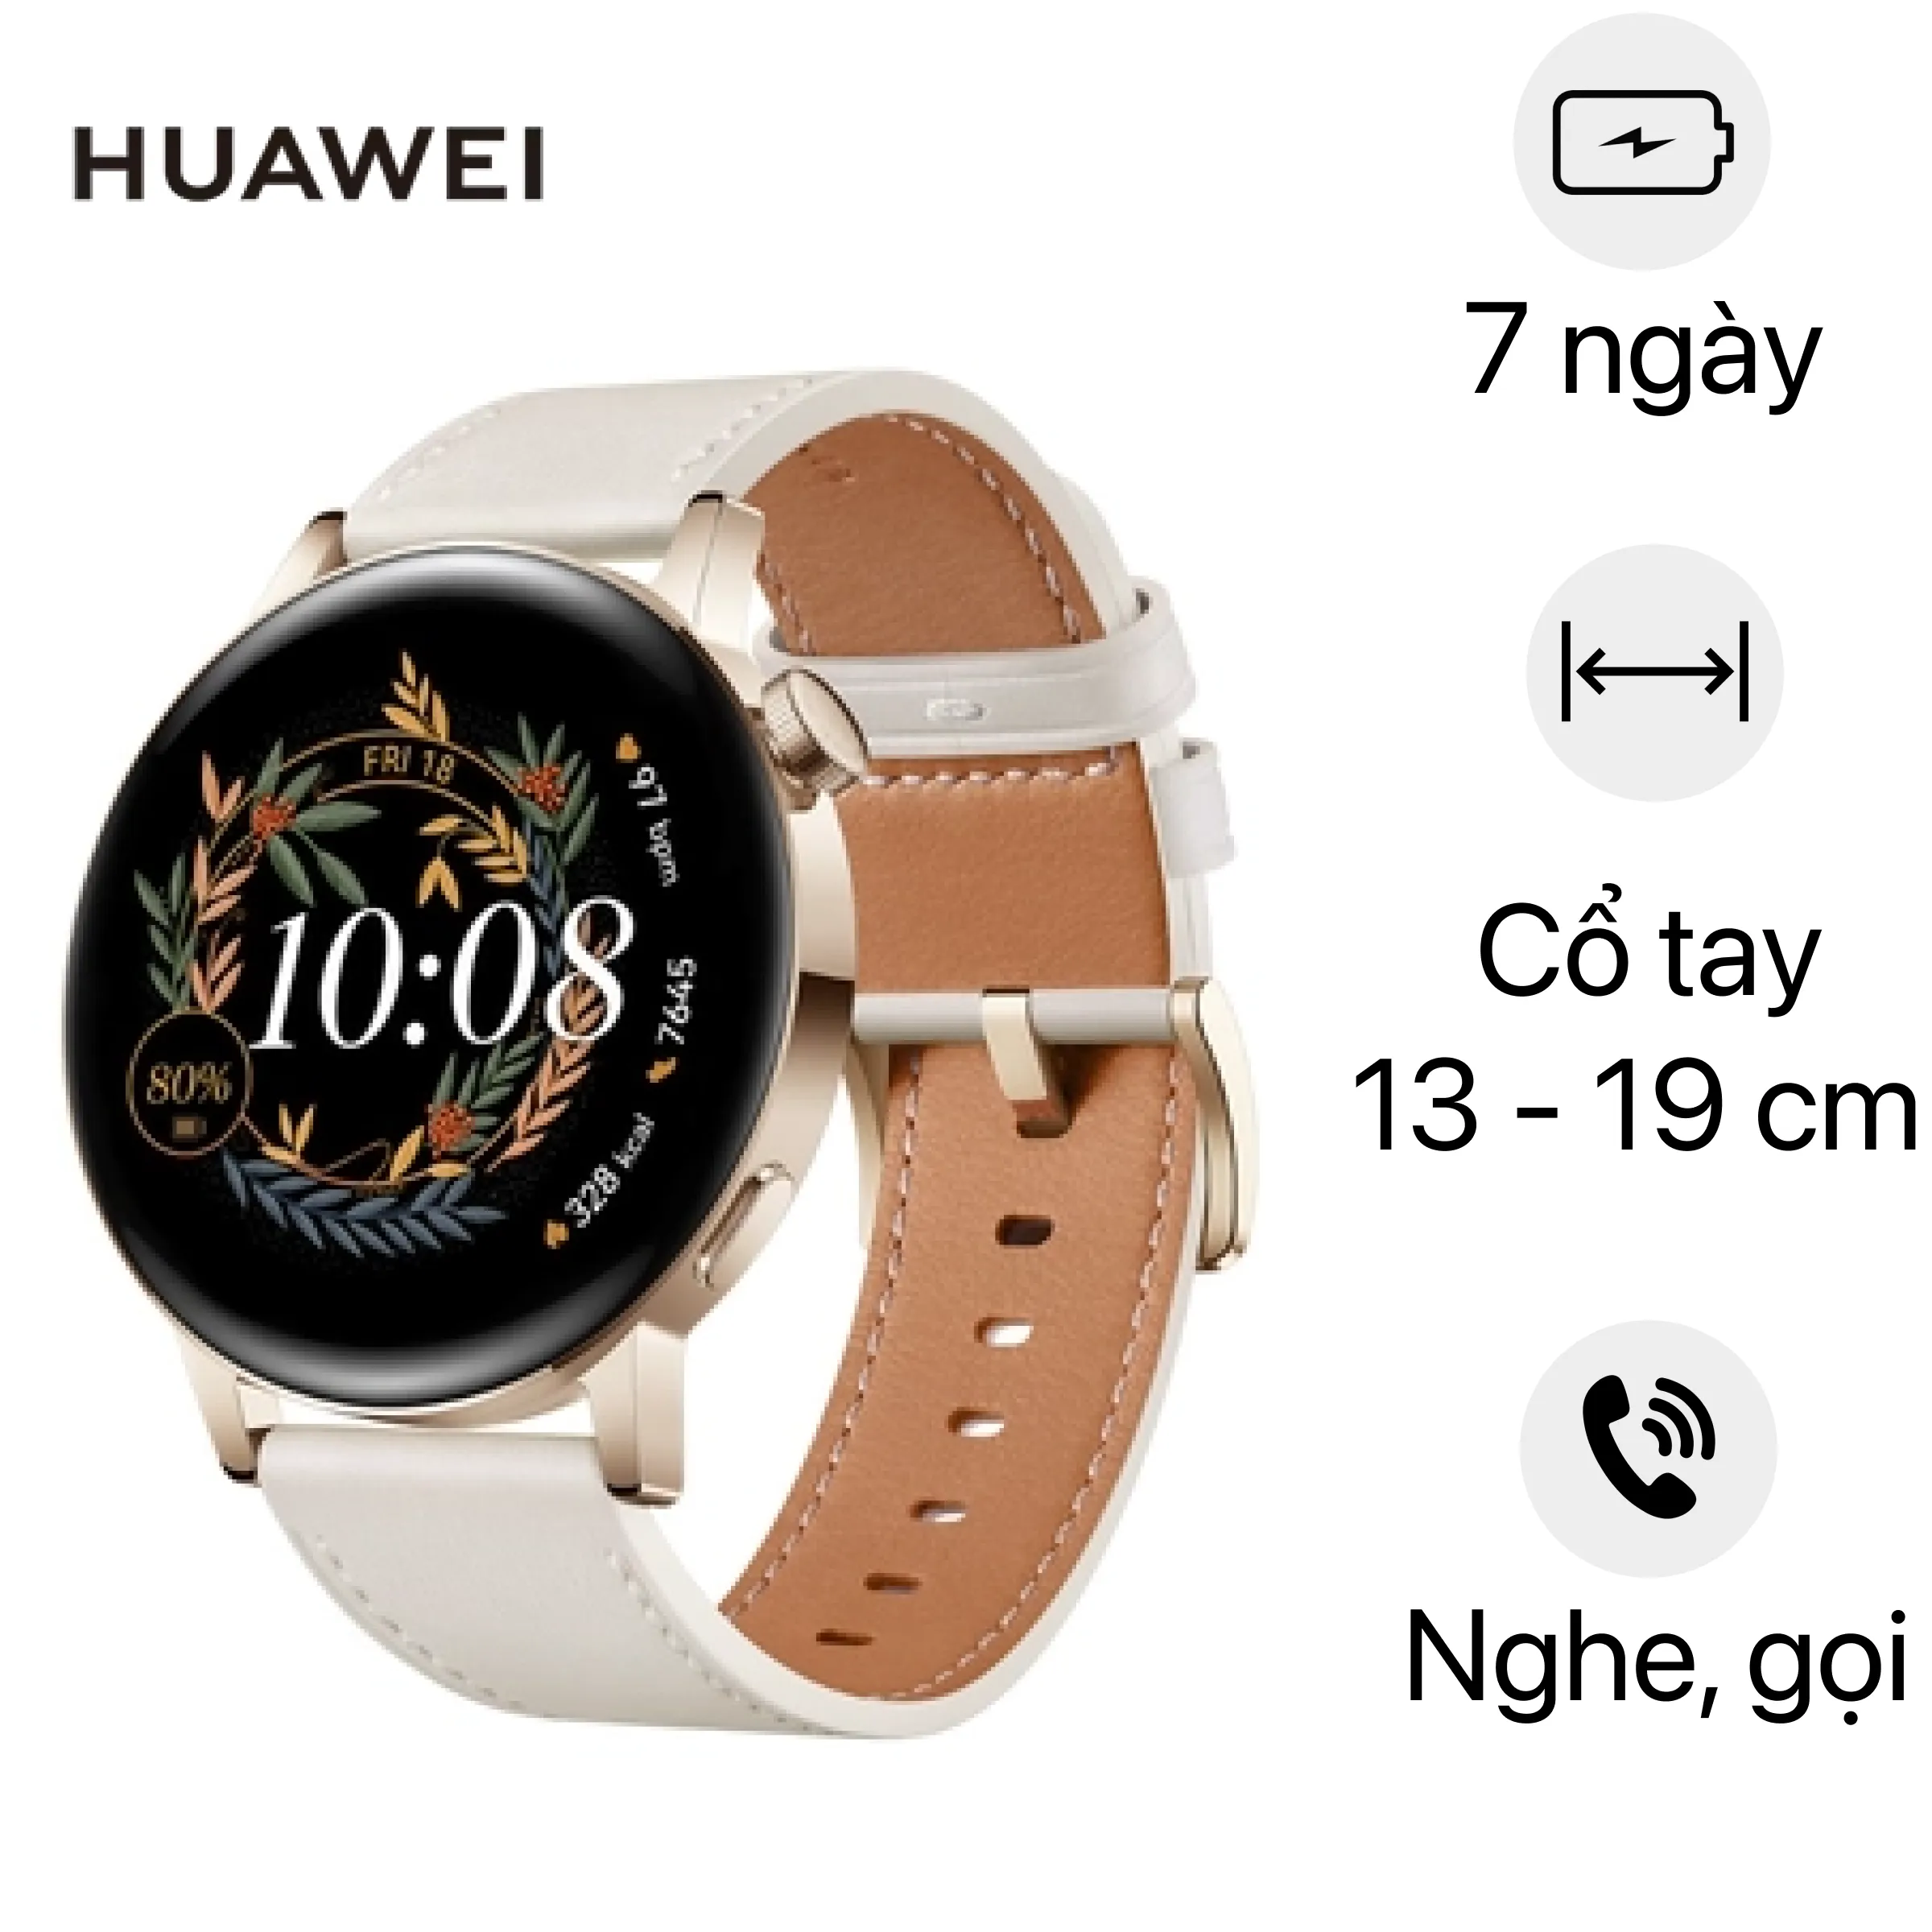 Đồng hồ thông minh Huawei watch GT 42mm dây da Giá rẻ, cao cấp